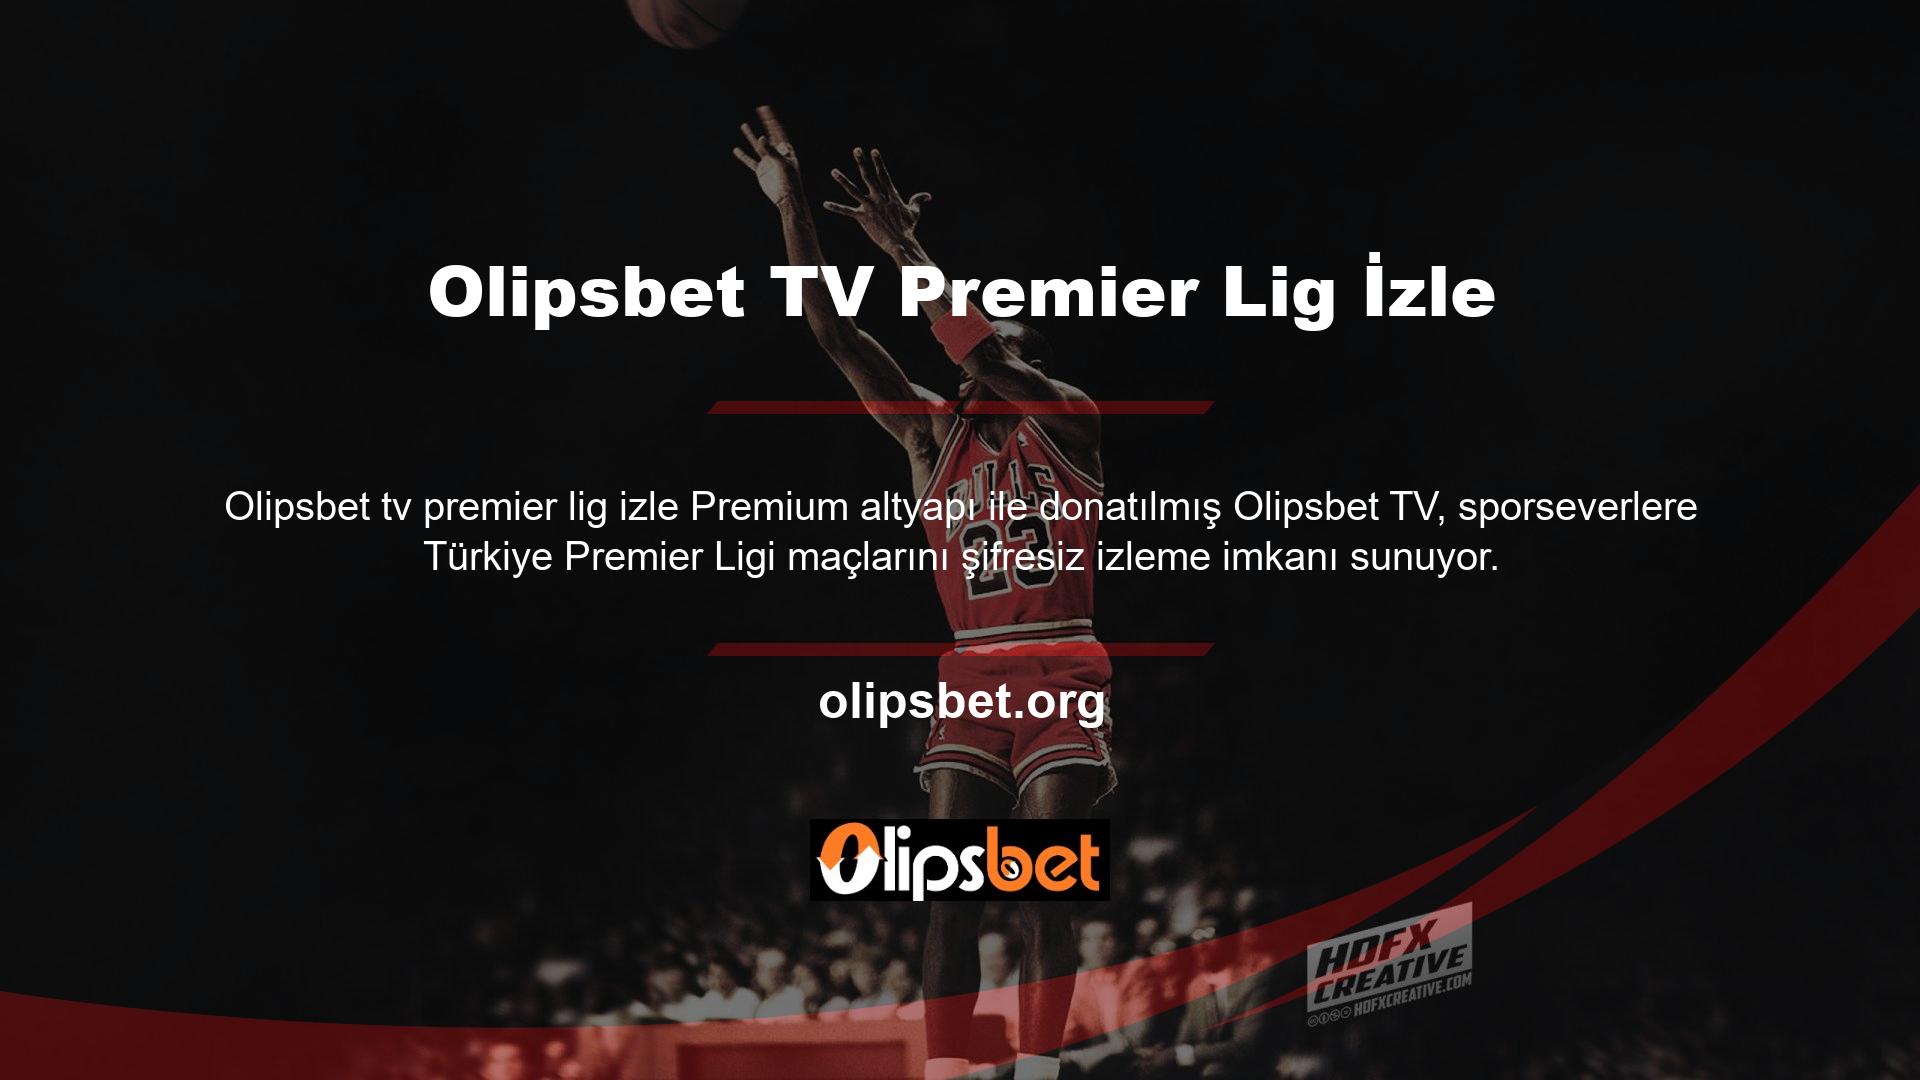 Olipsbet TV, Premier Lig maçlarını HD kalitesinde ücretsiz, şifresiz yayınlarla izlemenizi sağlar